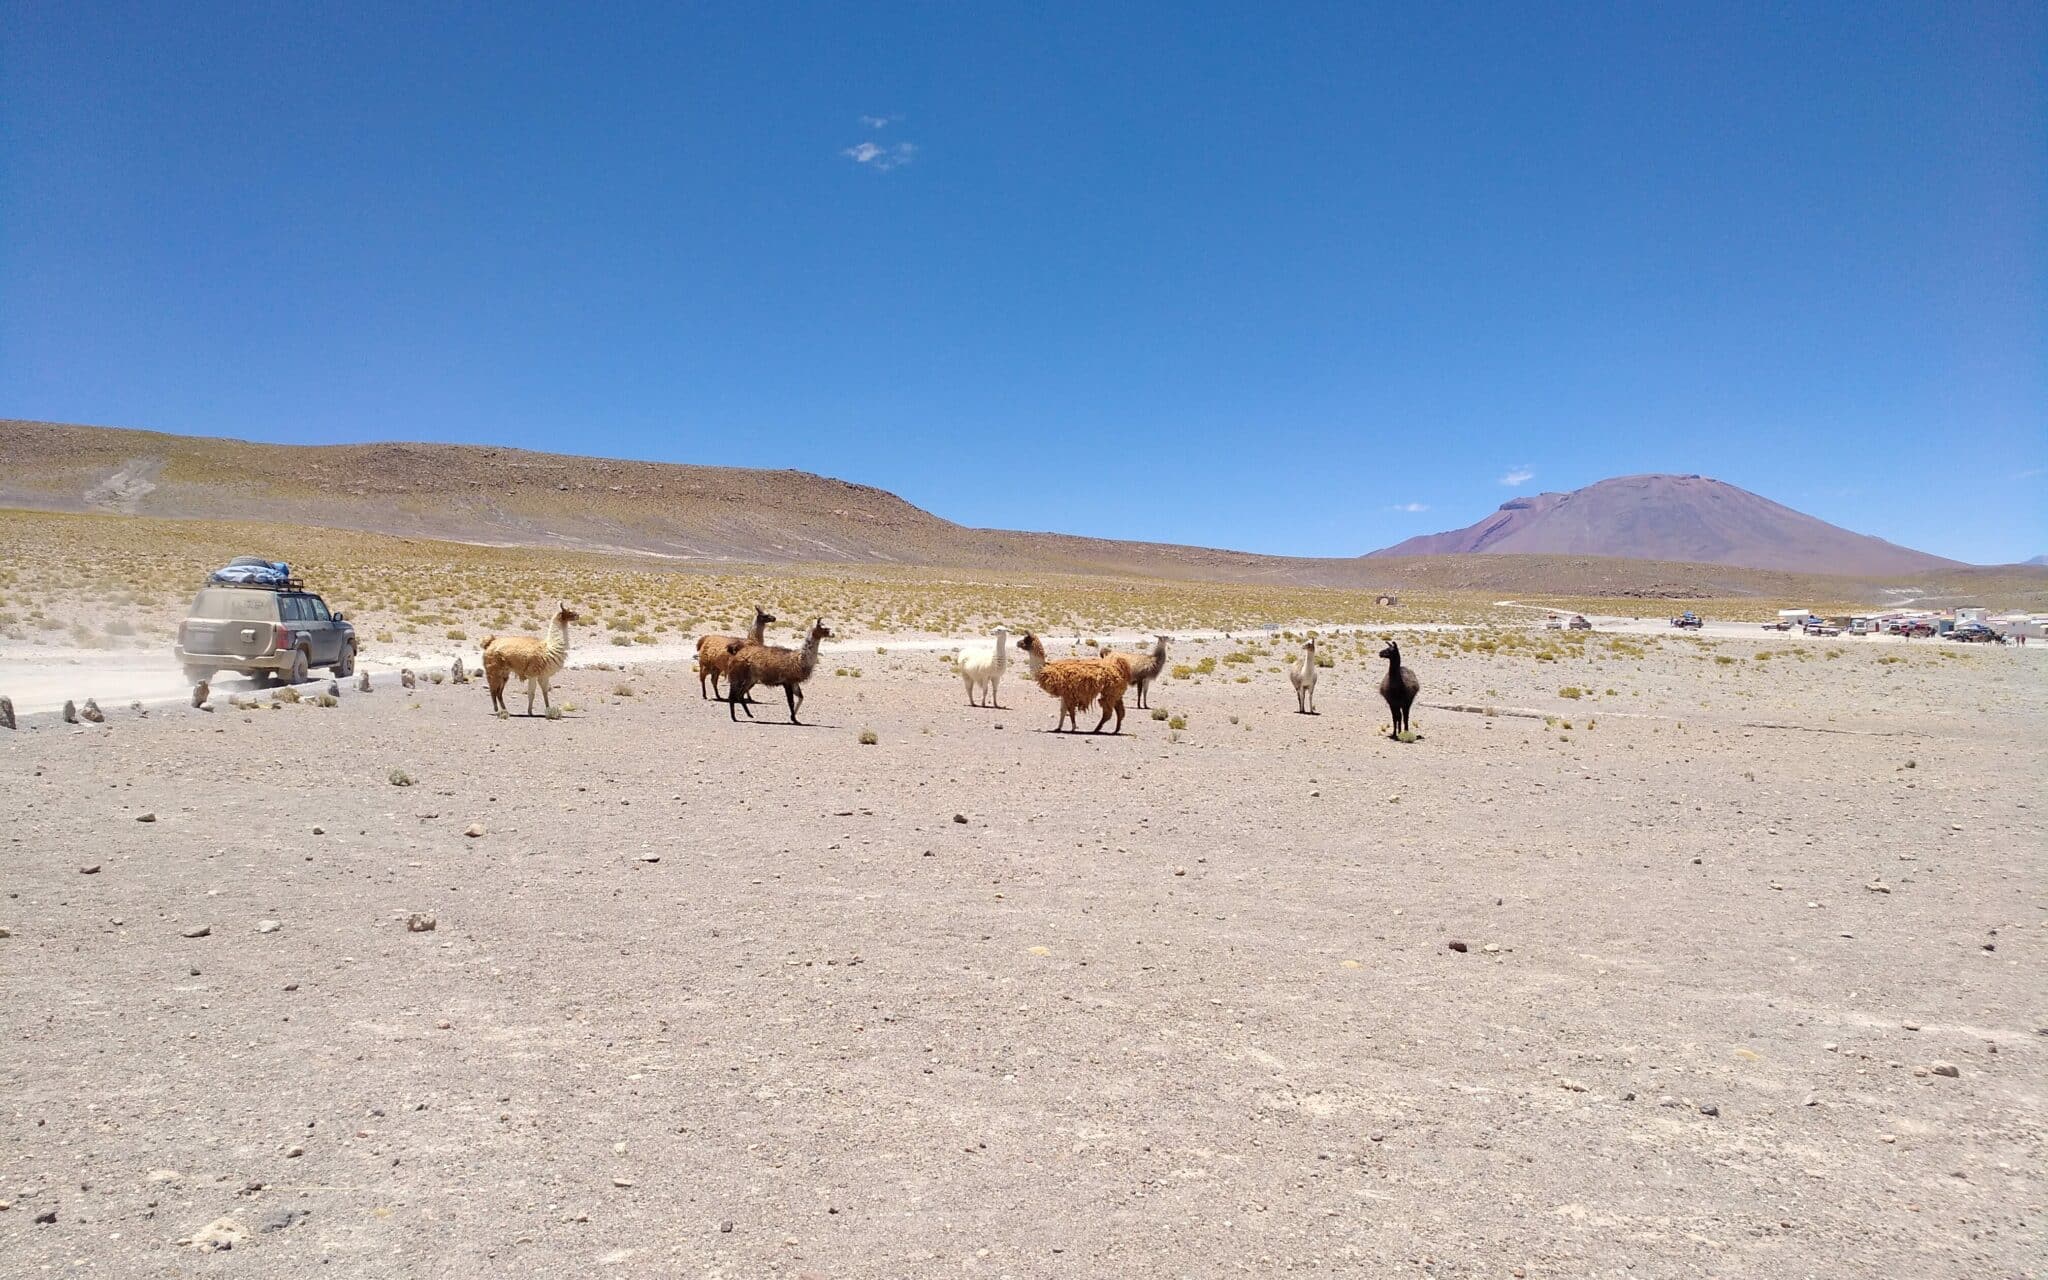 Lama e alpaca nel mezzo di un paesaggio arido, su una strada sterrata passa un fuoristrada.